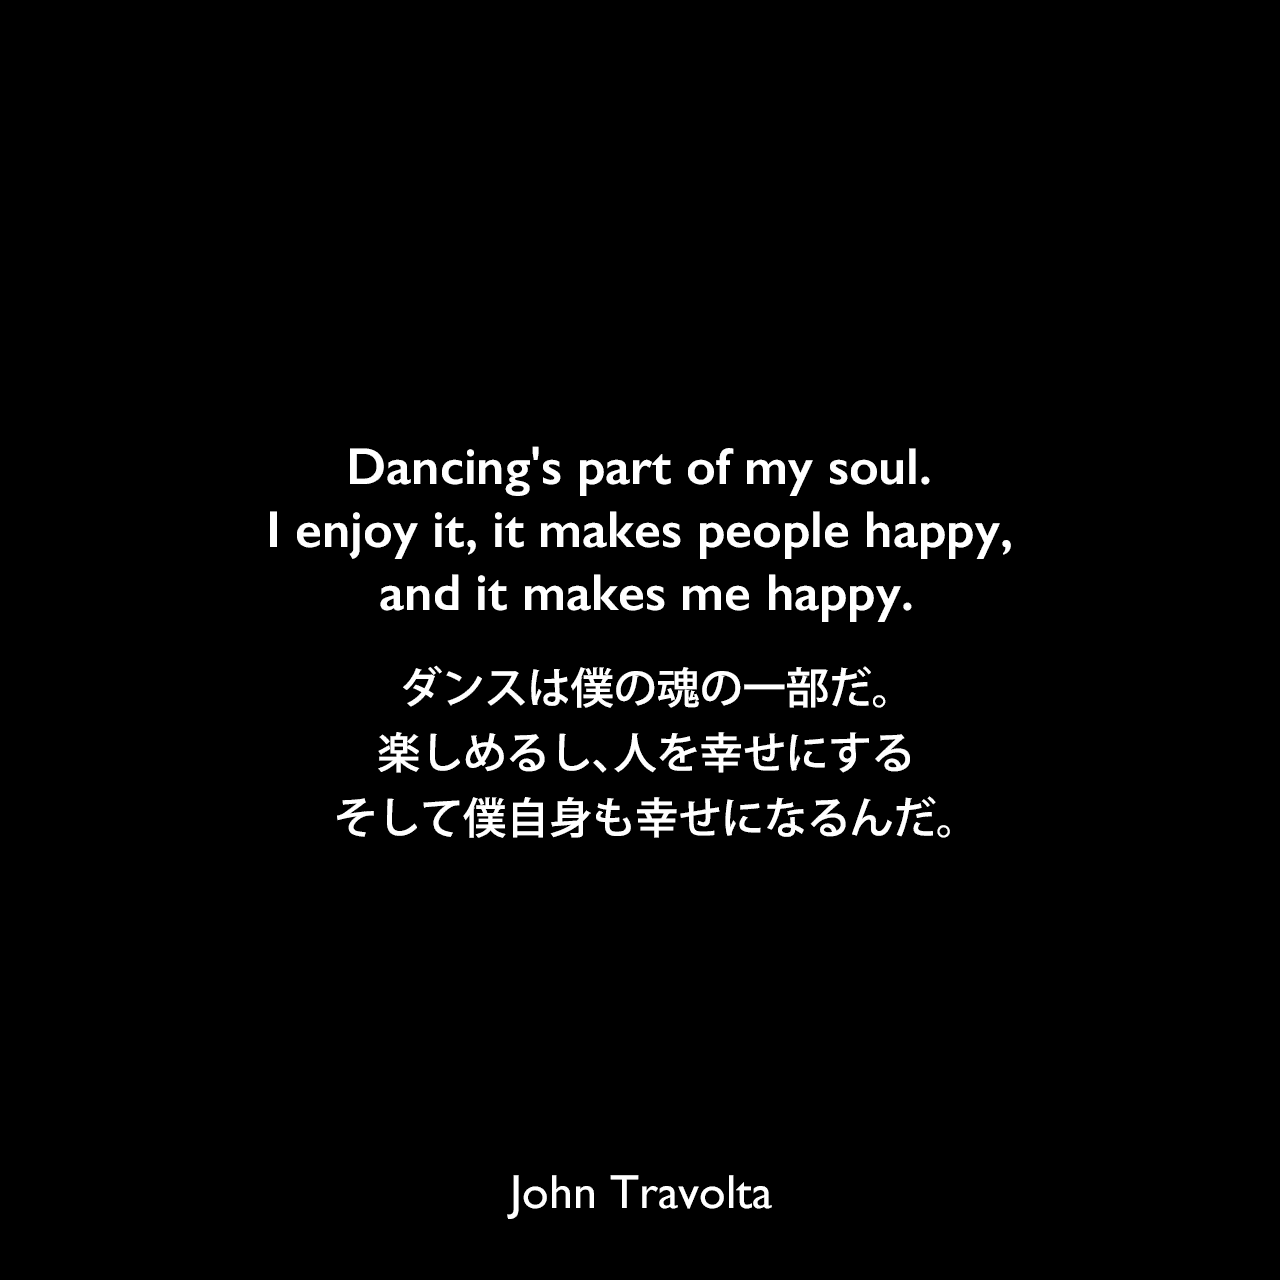 Dancing's part of my soul. I enjoy it, it makes people happy, and it makes me happy.ダンスは僕の魂の一部だ。楽しめるし、人を幸せにする、そして僕自身も幸せになるんだ。John Travolta